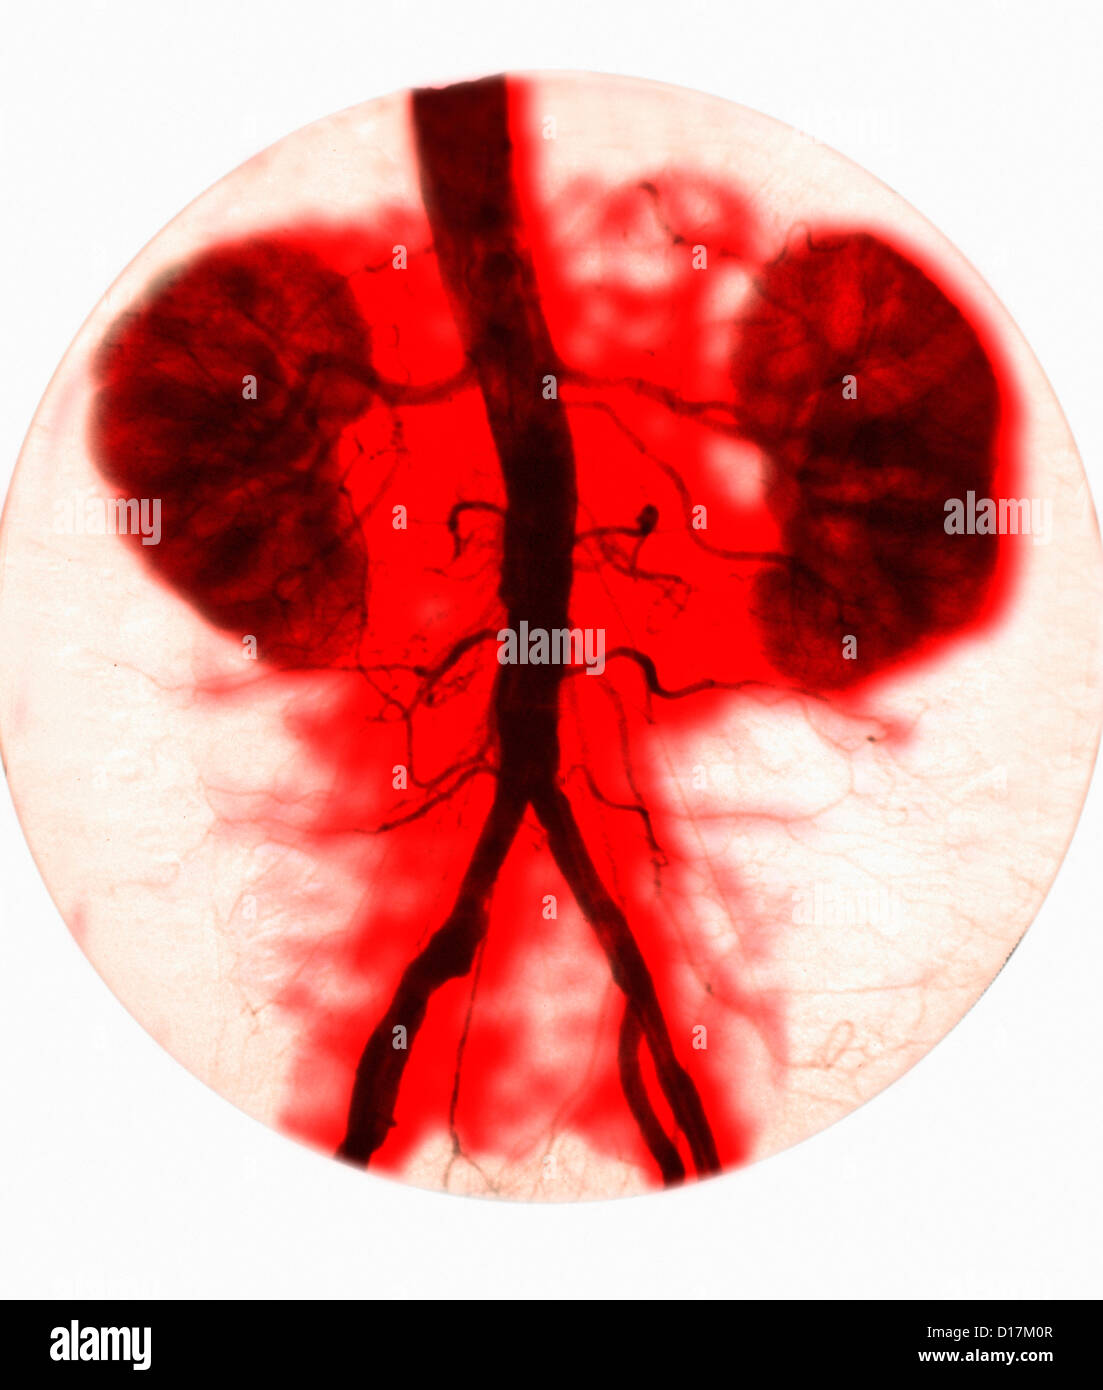 Kidney arteriogram of normal kidneys Stock Photo